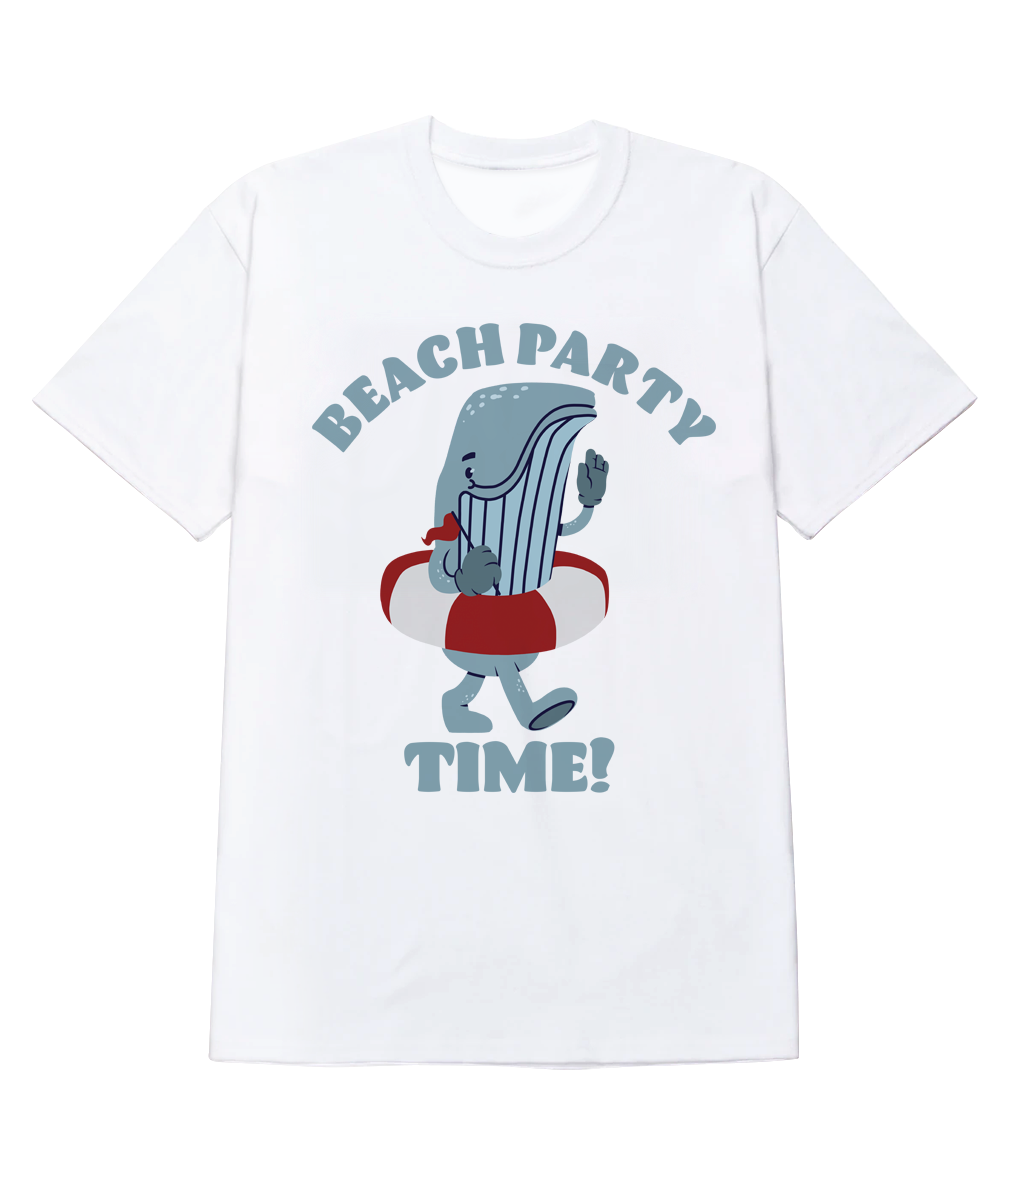 Polera - Beach party time!